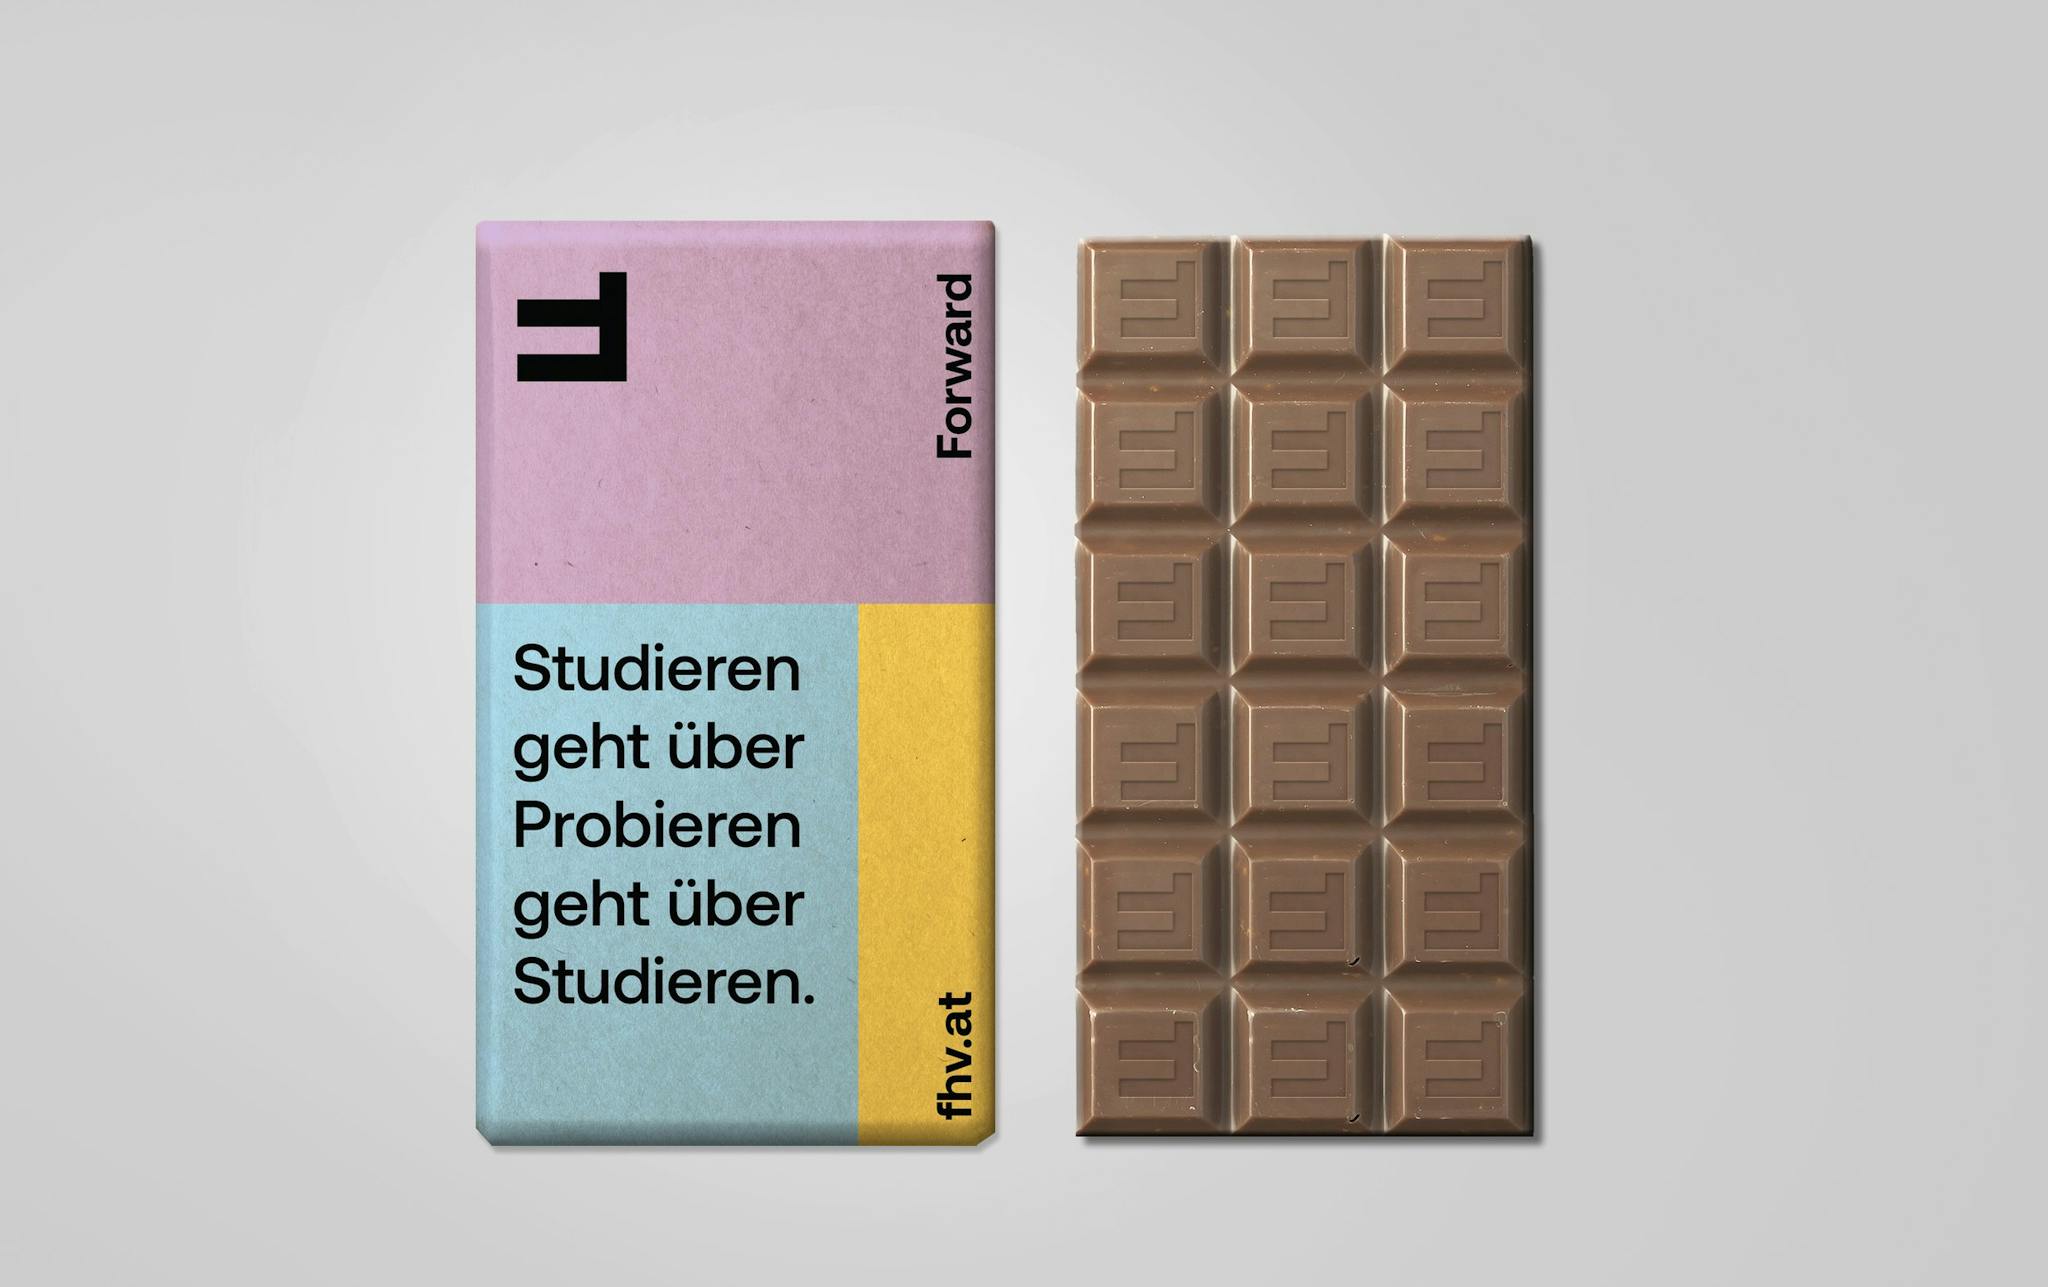 FHV Branding 2021: Fokoladetafel - Probieren geht über studieren © Zeughaus Design